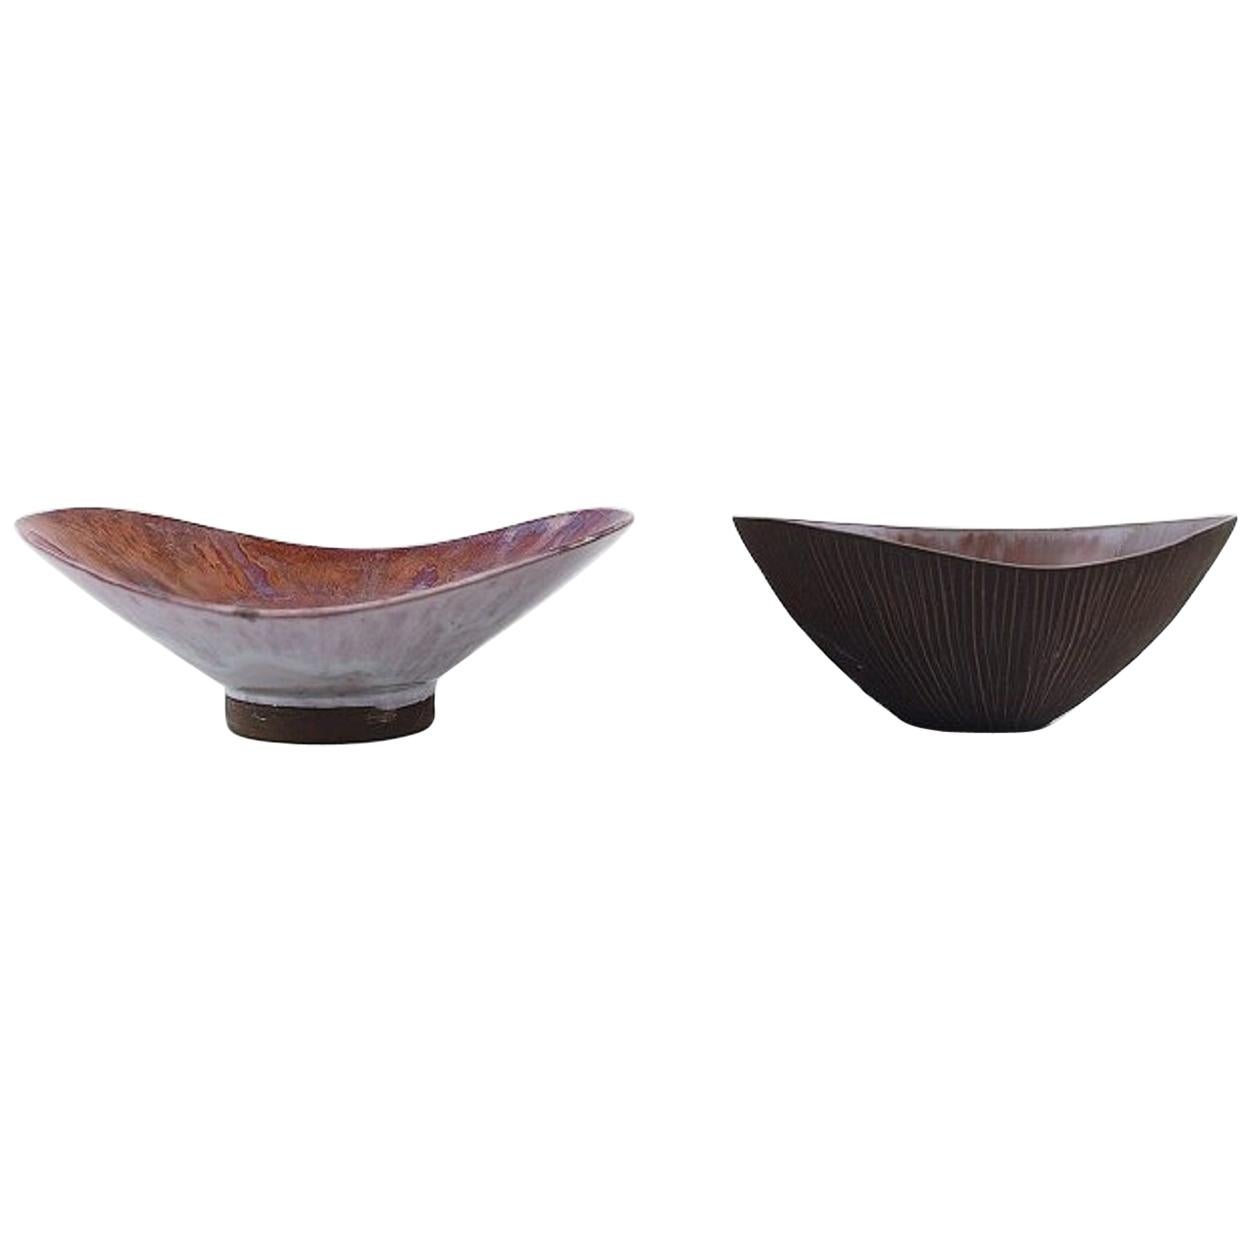 Sven Hofverberg Swedish Ceramist, Two Unique Glazed Ceramic Bowls For Sale